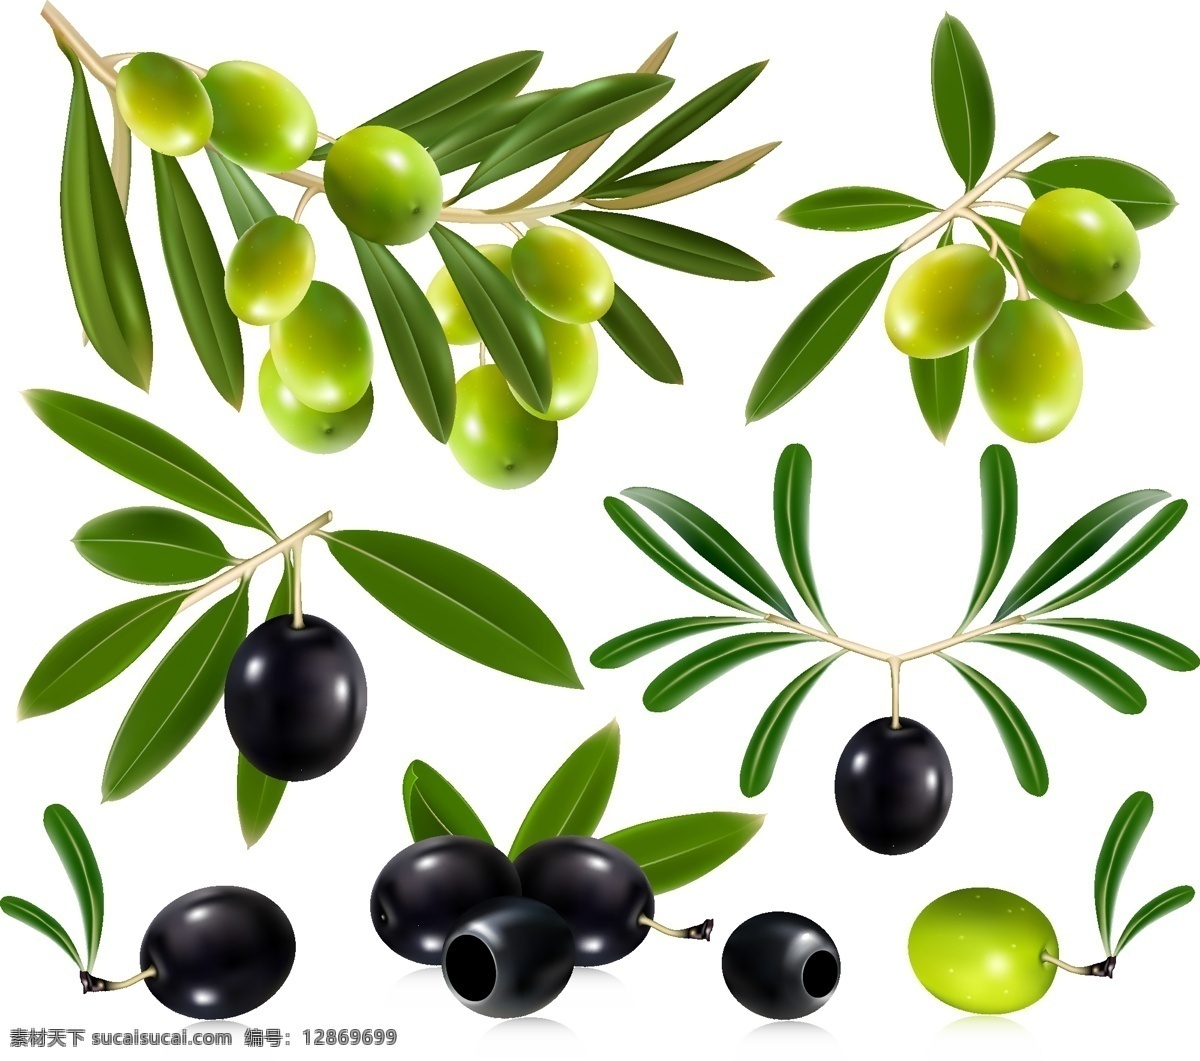 矢量橄榄 手绘橄榄 卡通橄榄 逼真橄榄 橄榄插画 橄榄元素 橄榄素材 黑色橄榄 绿色橄榄 橄榄叶子 橄榄树叶 食物 生物世界 水果